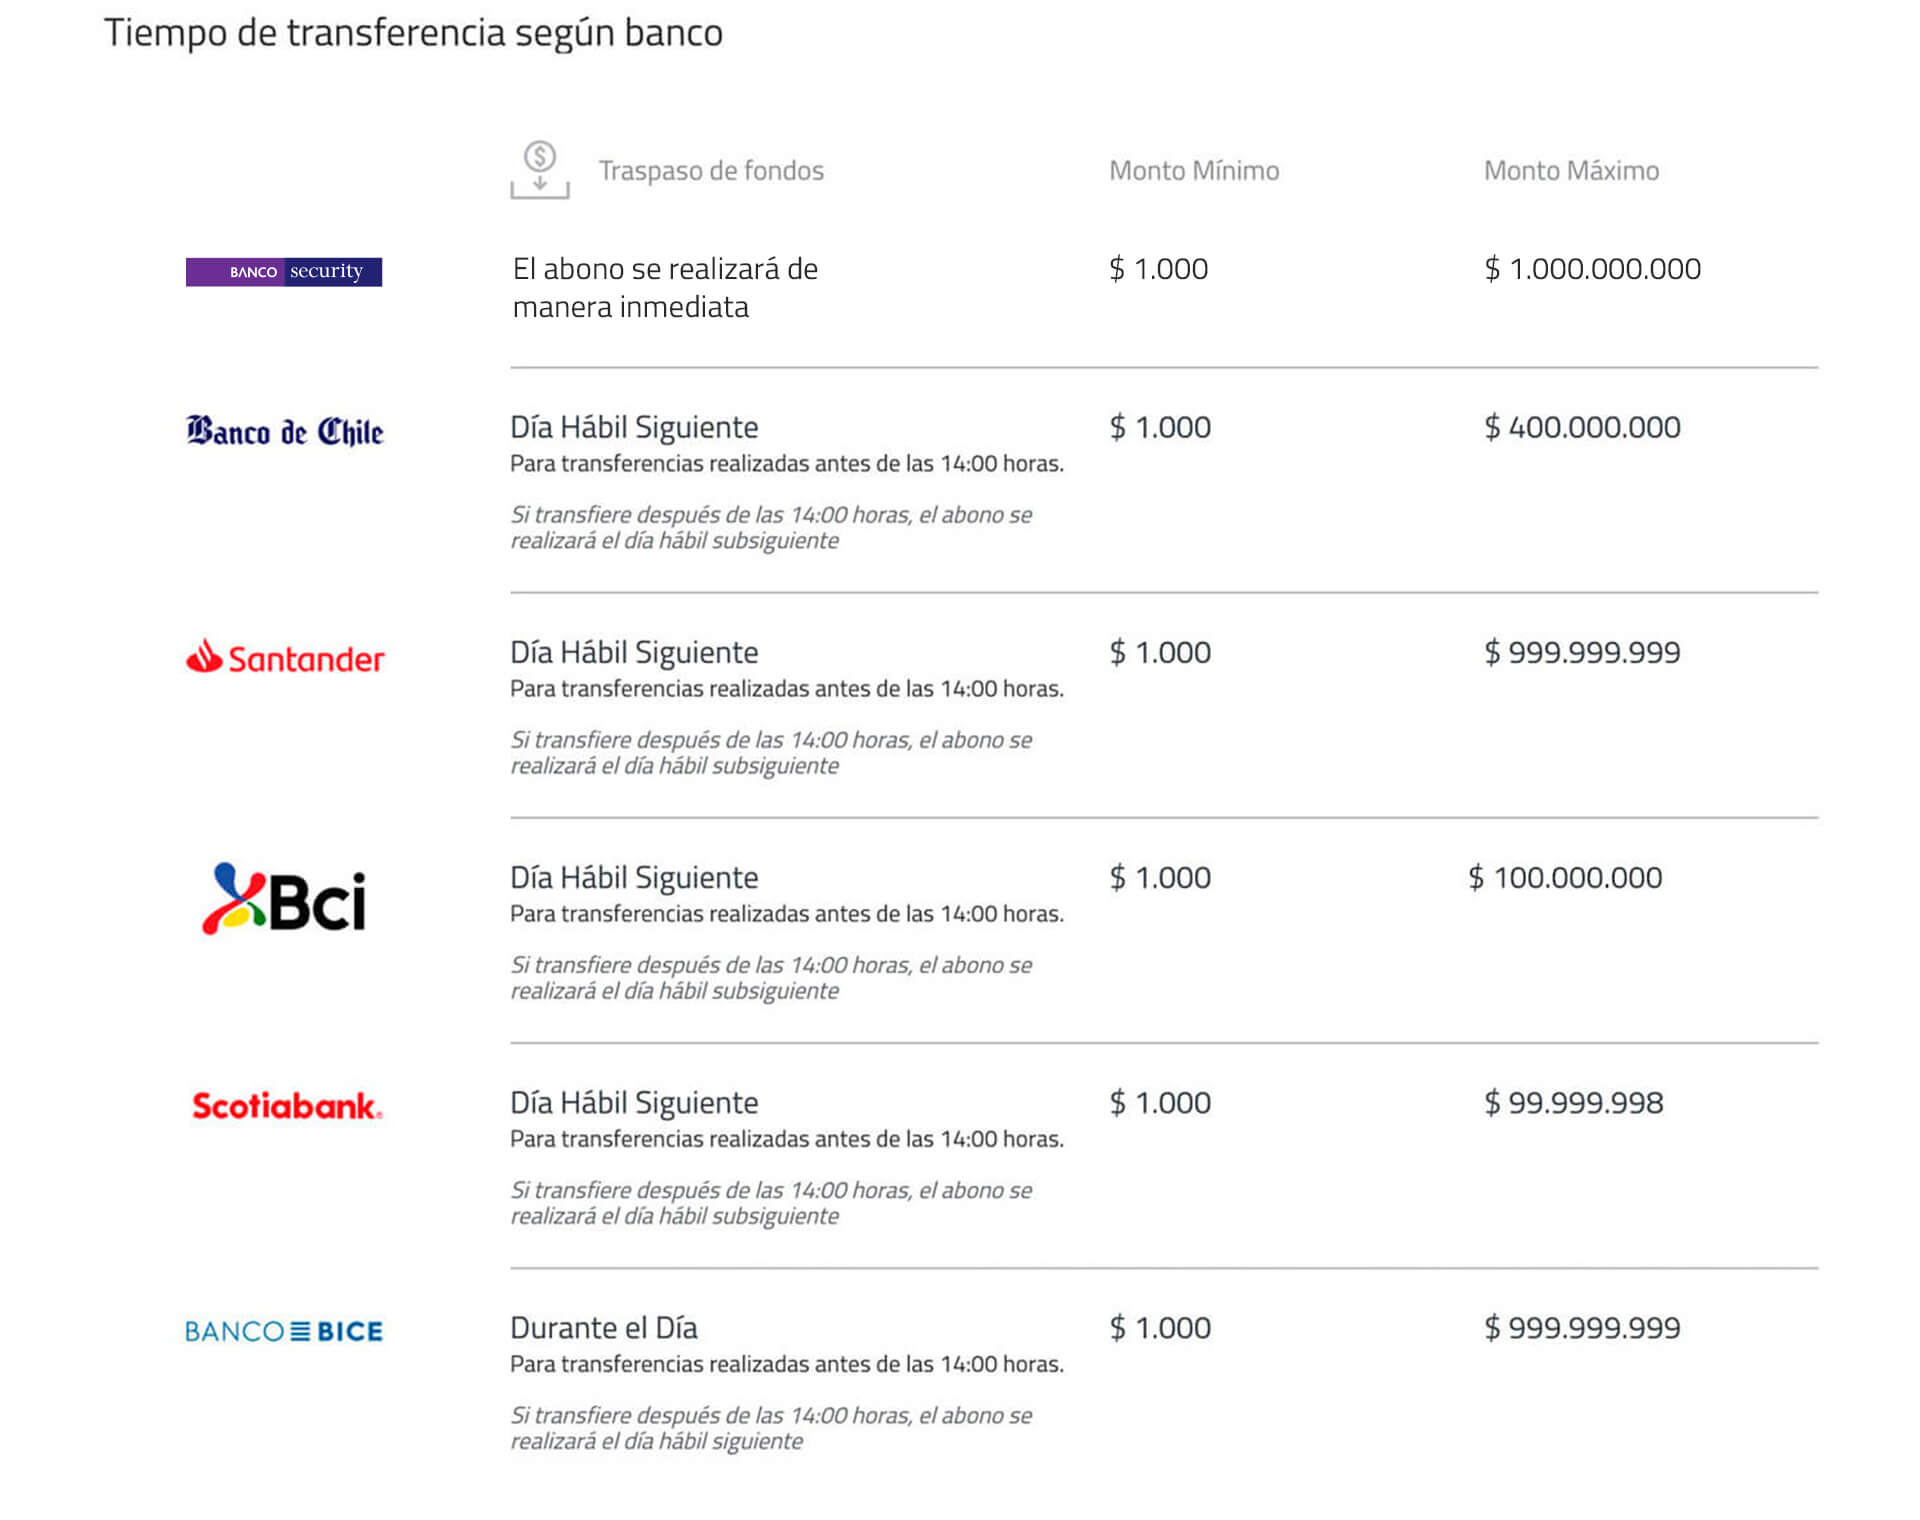 "Tiempo de transferencia según banco"